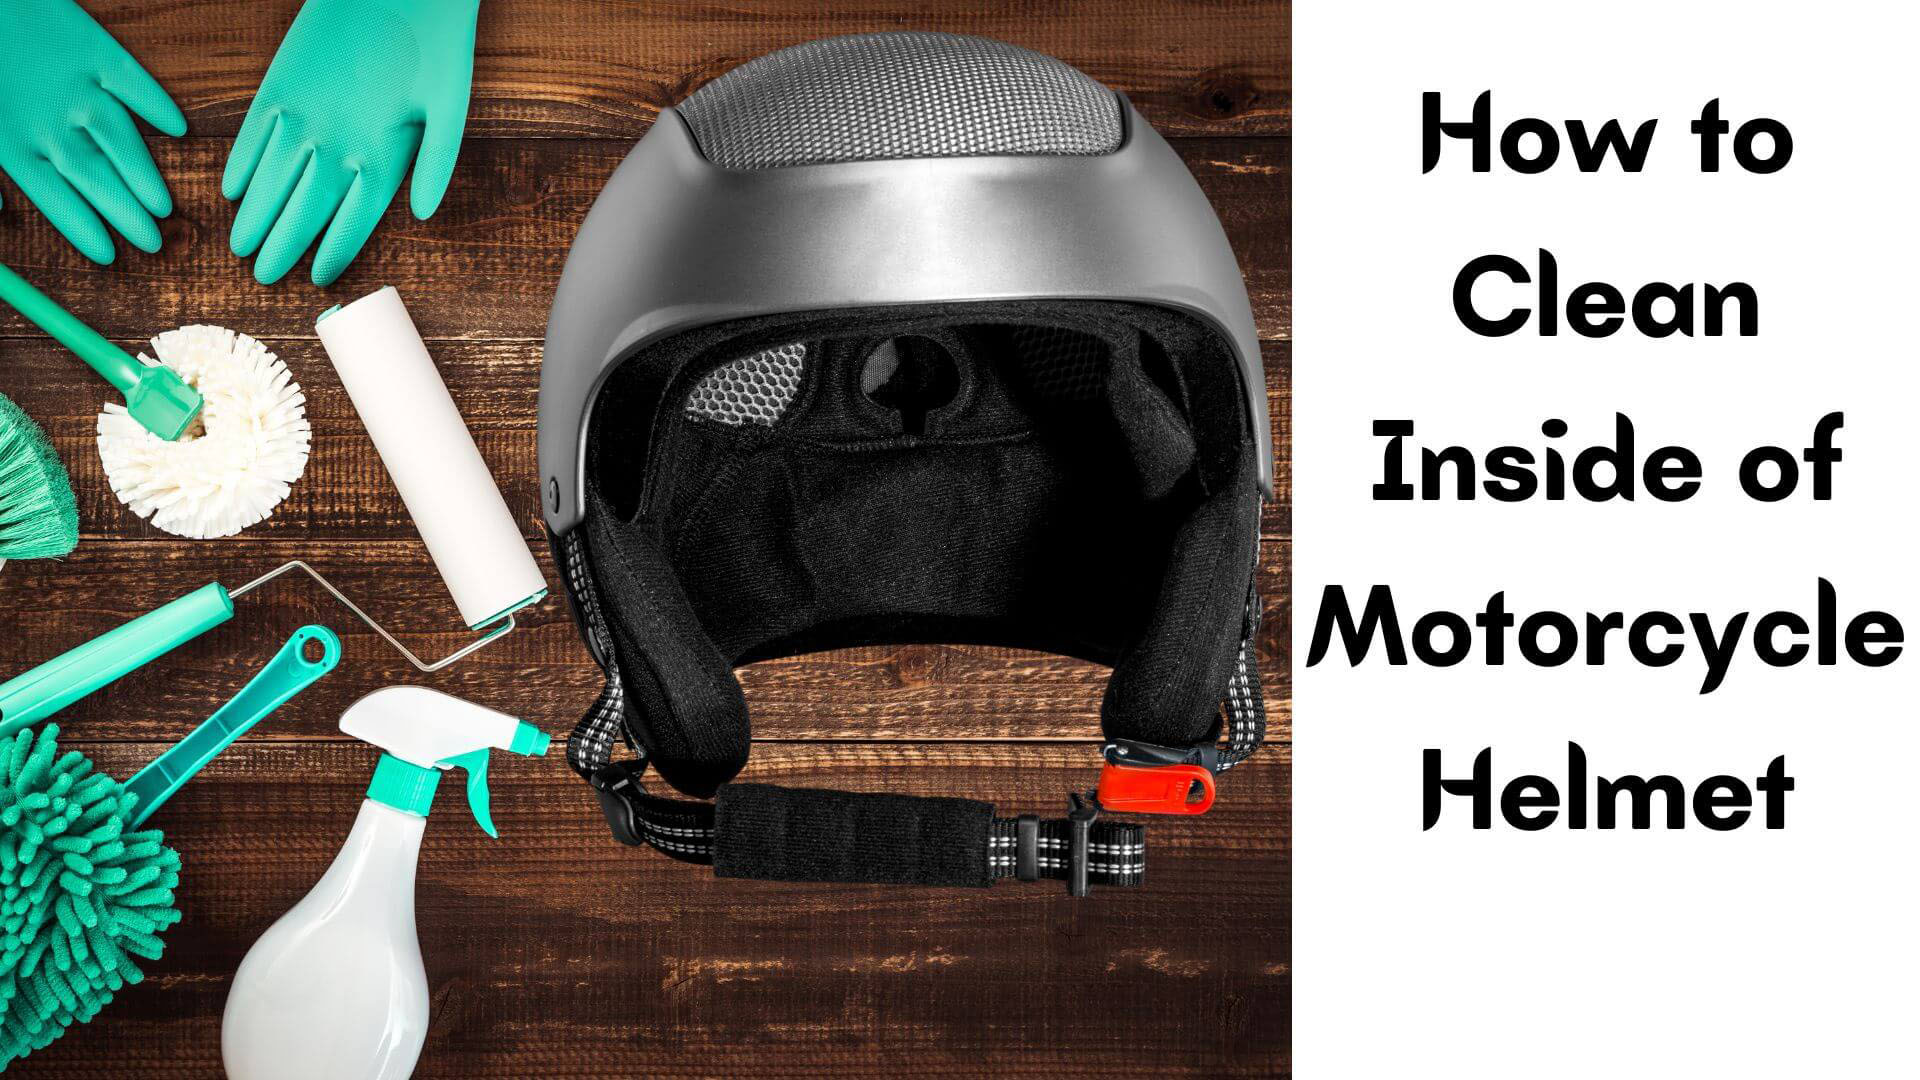 How to Clean Inside of Motorcycle Helmet?